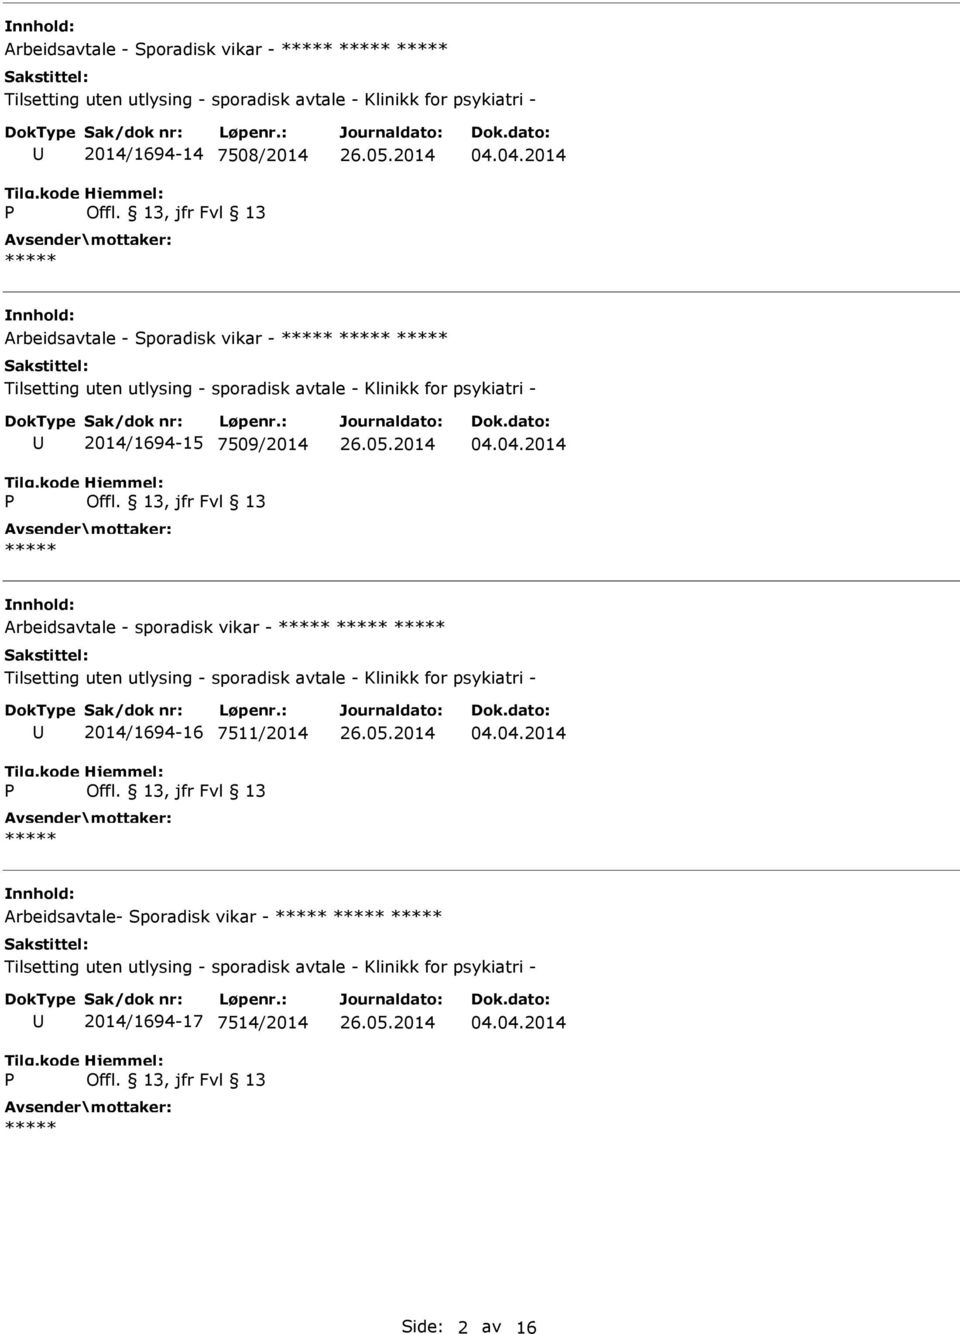 Arbeidsavtale - sporadisk vikar - 2014/1694-16 7511/2014